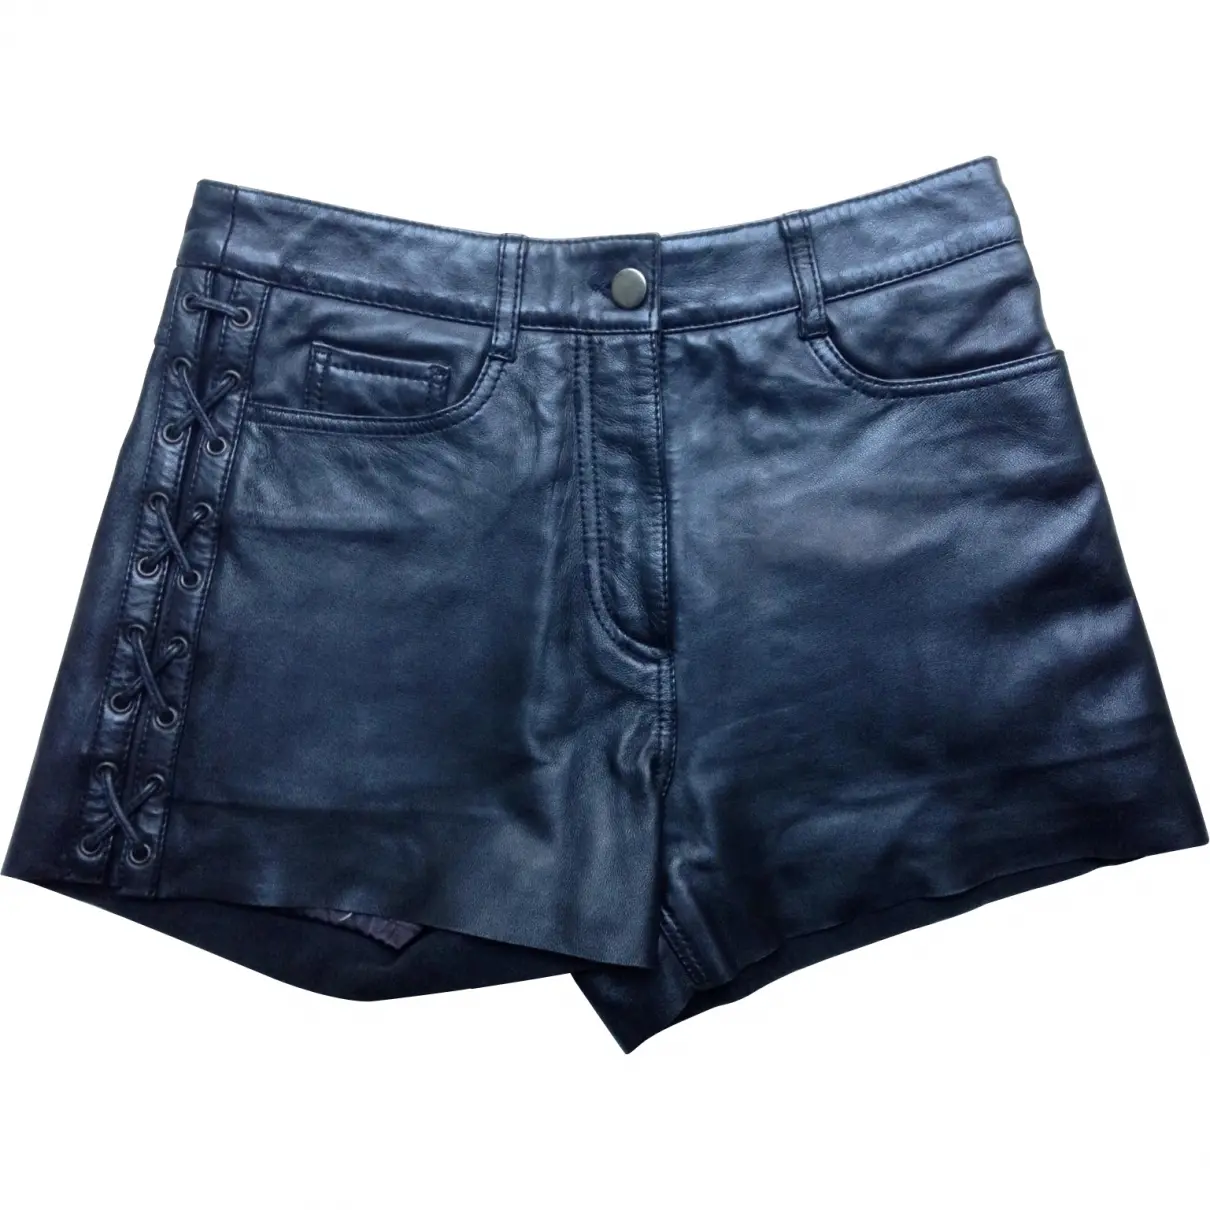 Black Leather Shorts Sandro